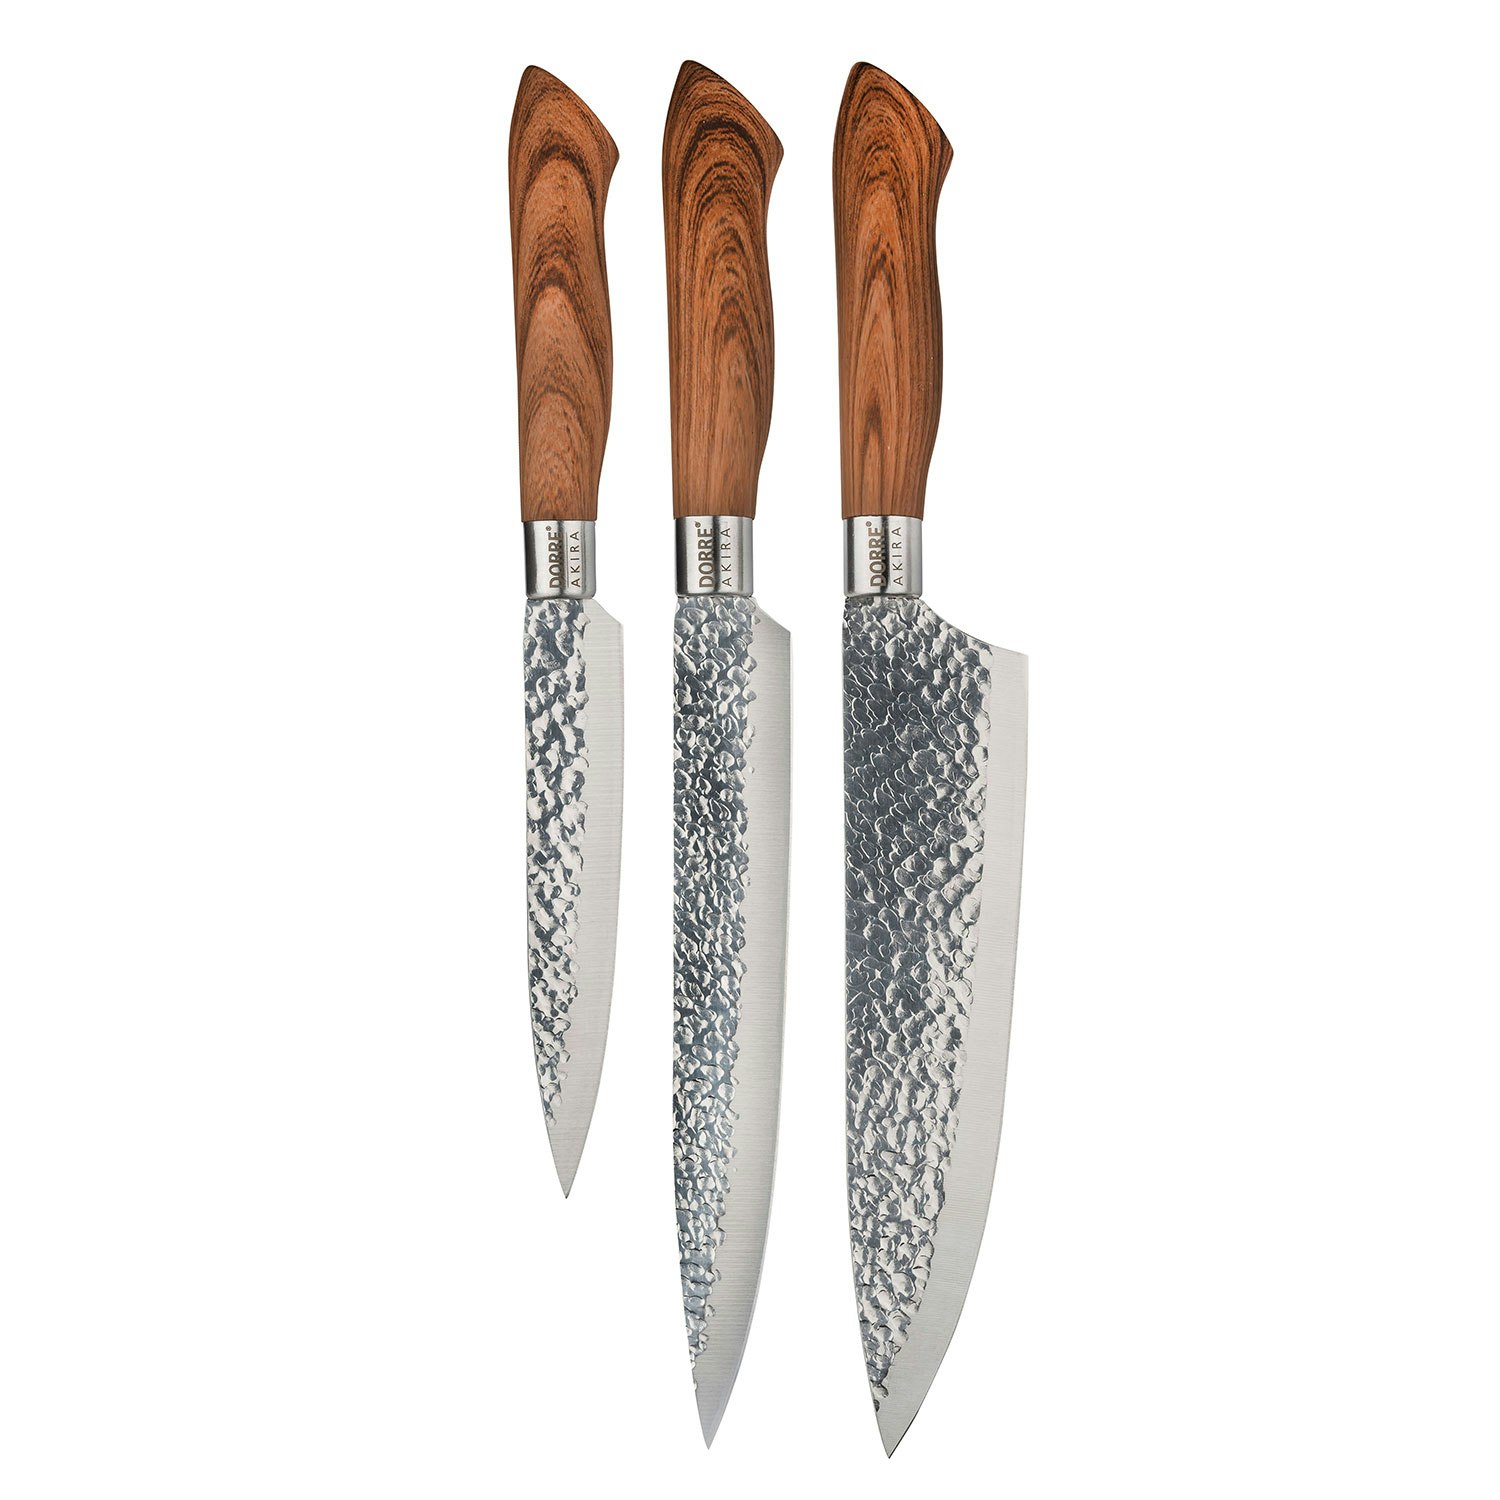 Knife Set 3 Pcs - EGO @ RoyalDesign